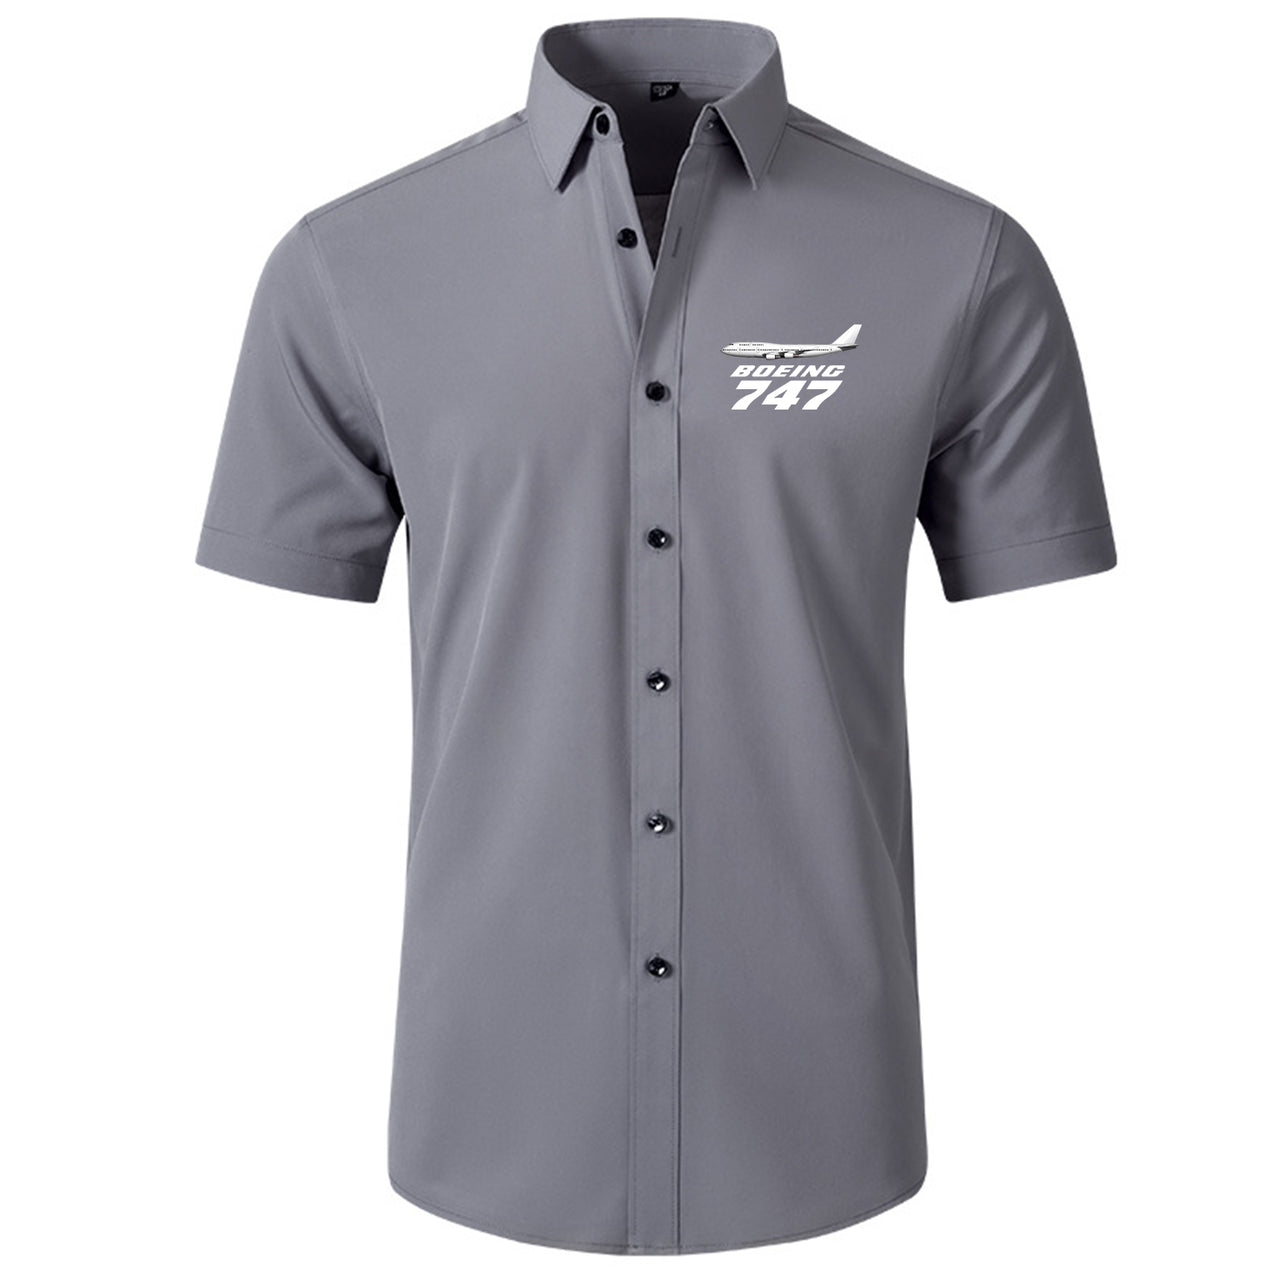 The Boeing 747 Designed Short Sleeve Shirts